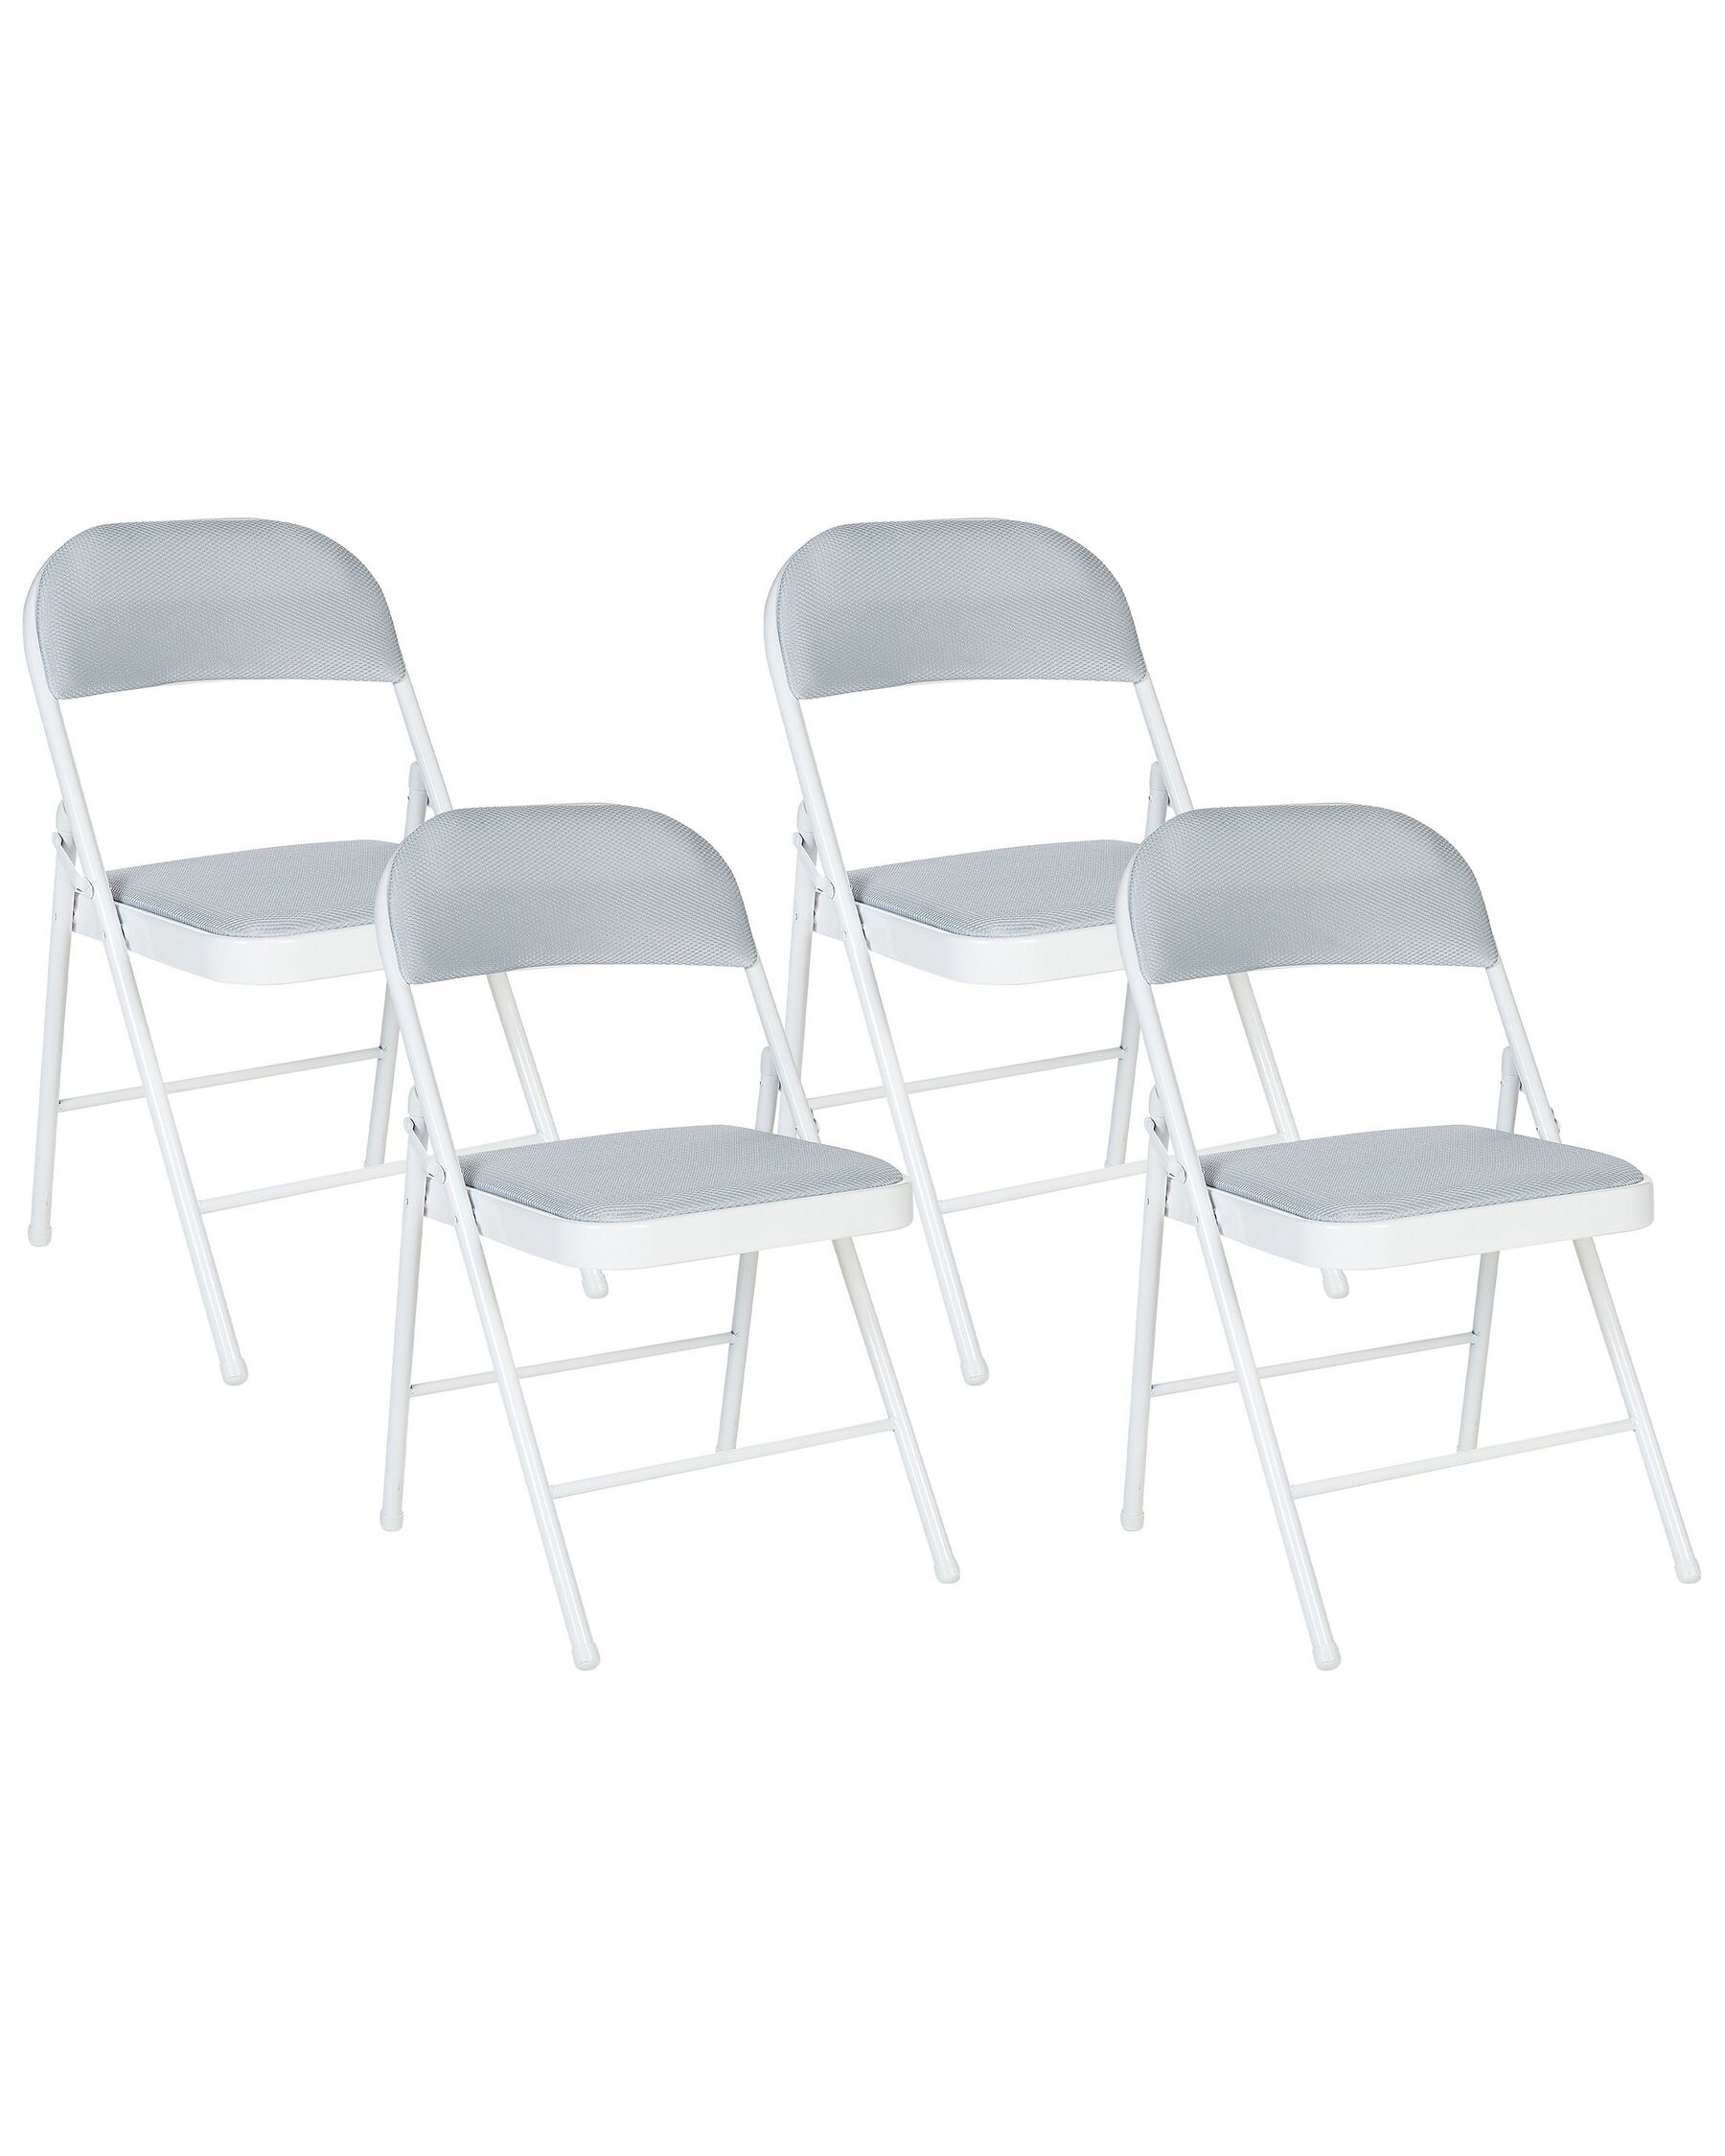 Sada 4 skládacích židlí světle šedé SPARKS_863757